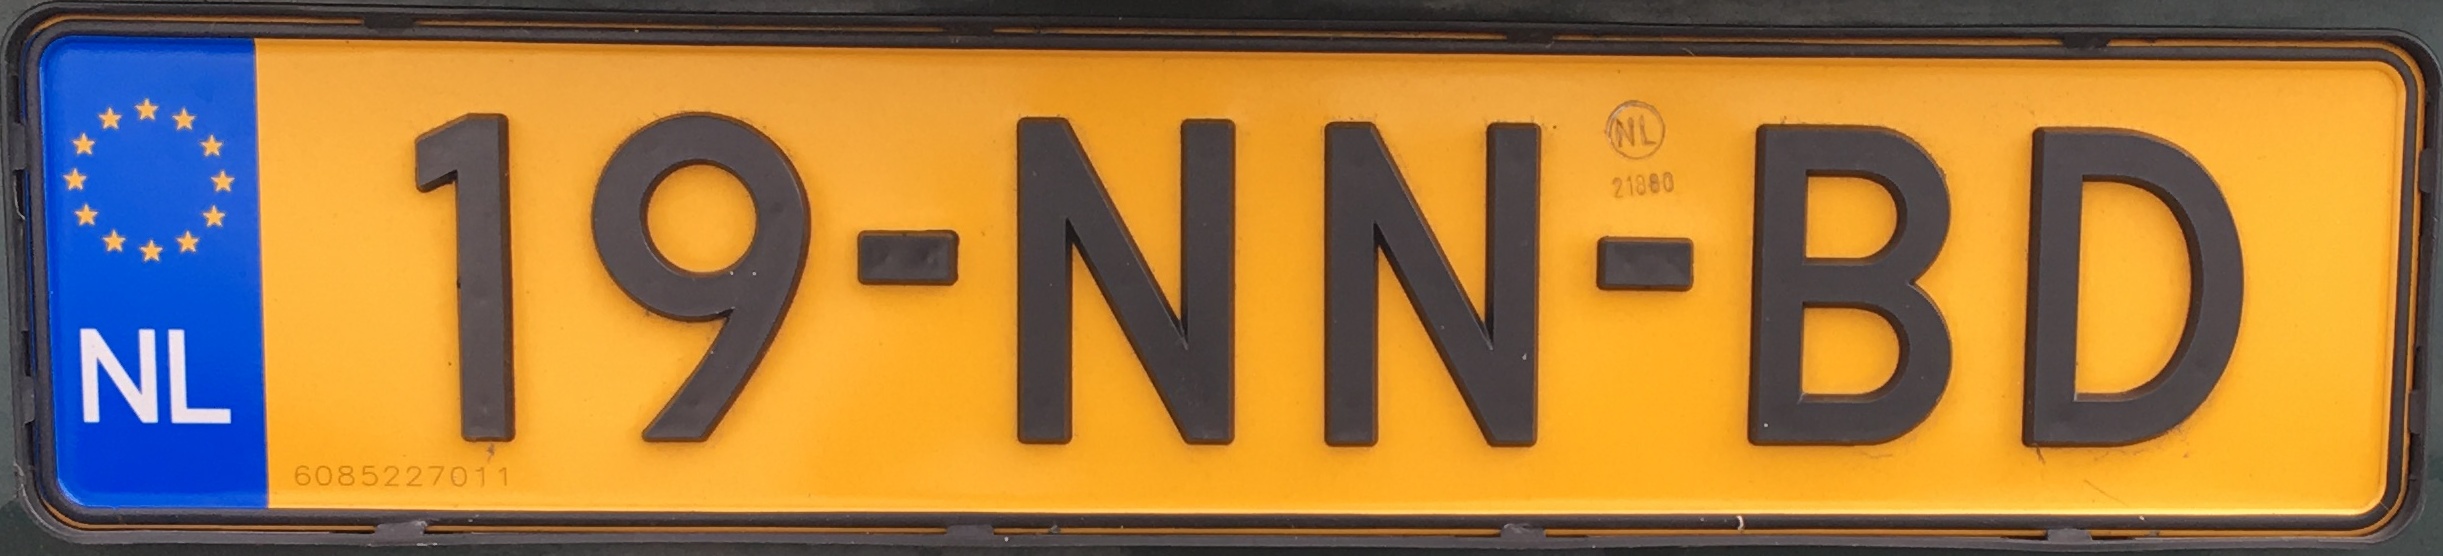 Nizozemská registrační značka běžná - formát b, foto vlastní